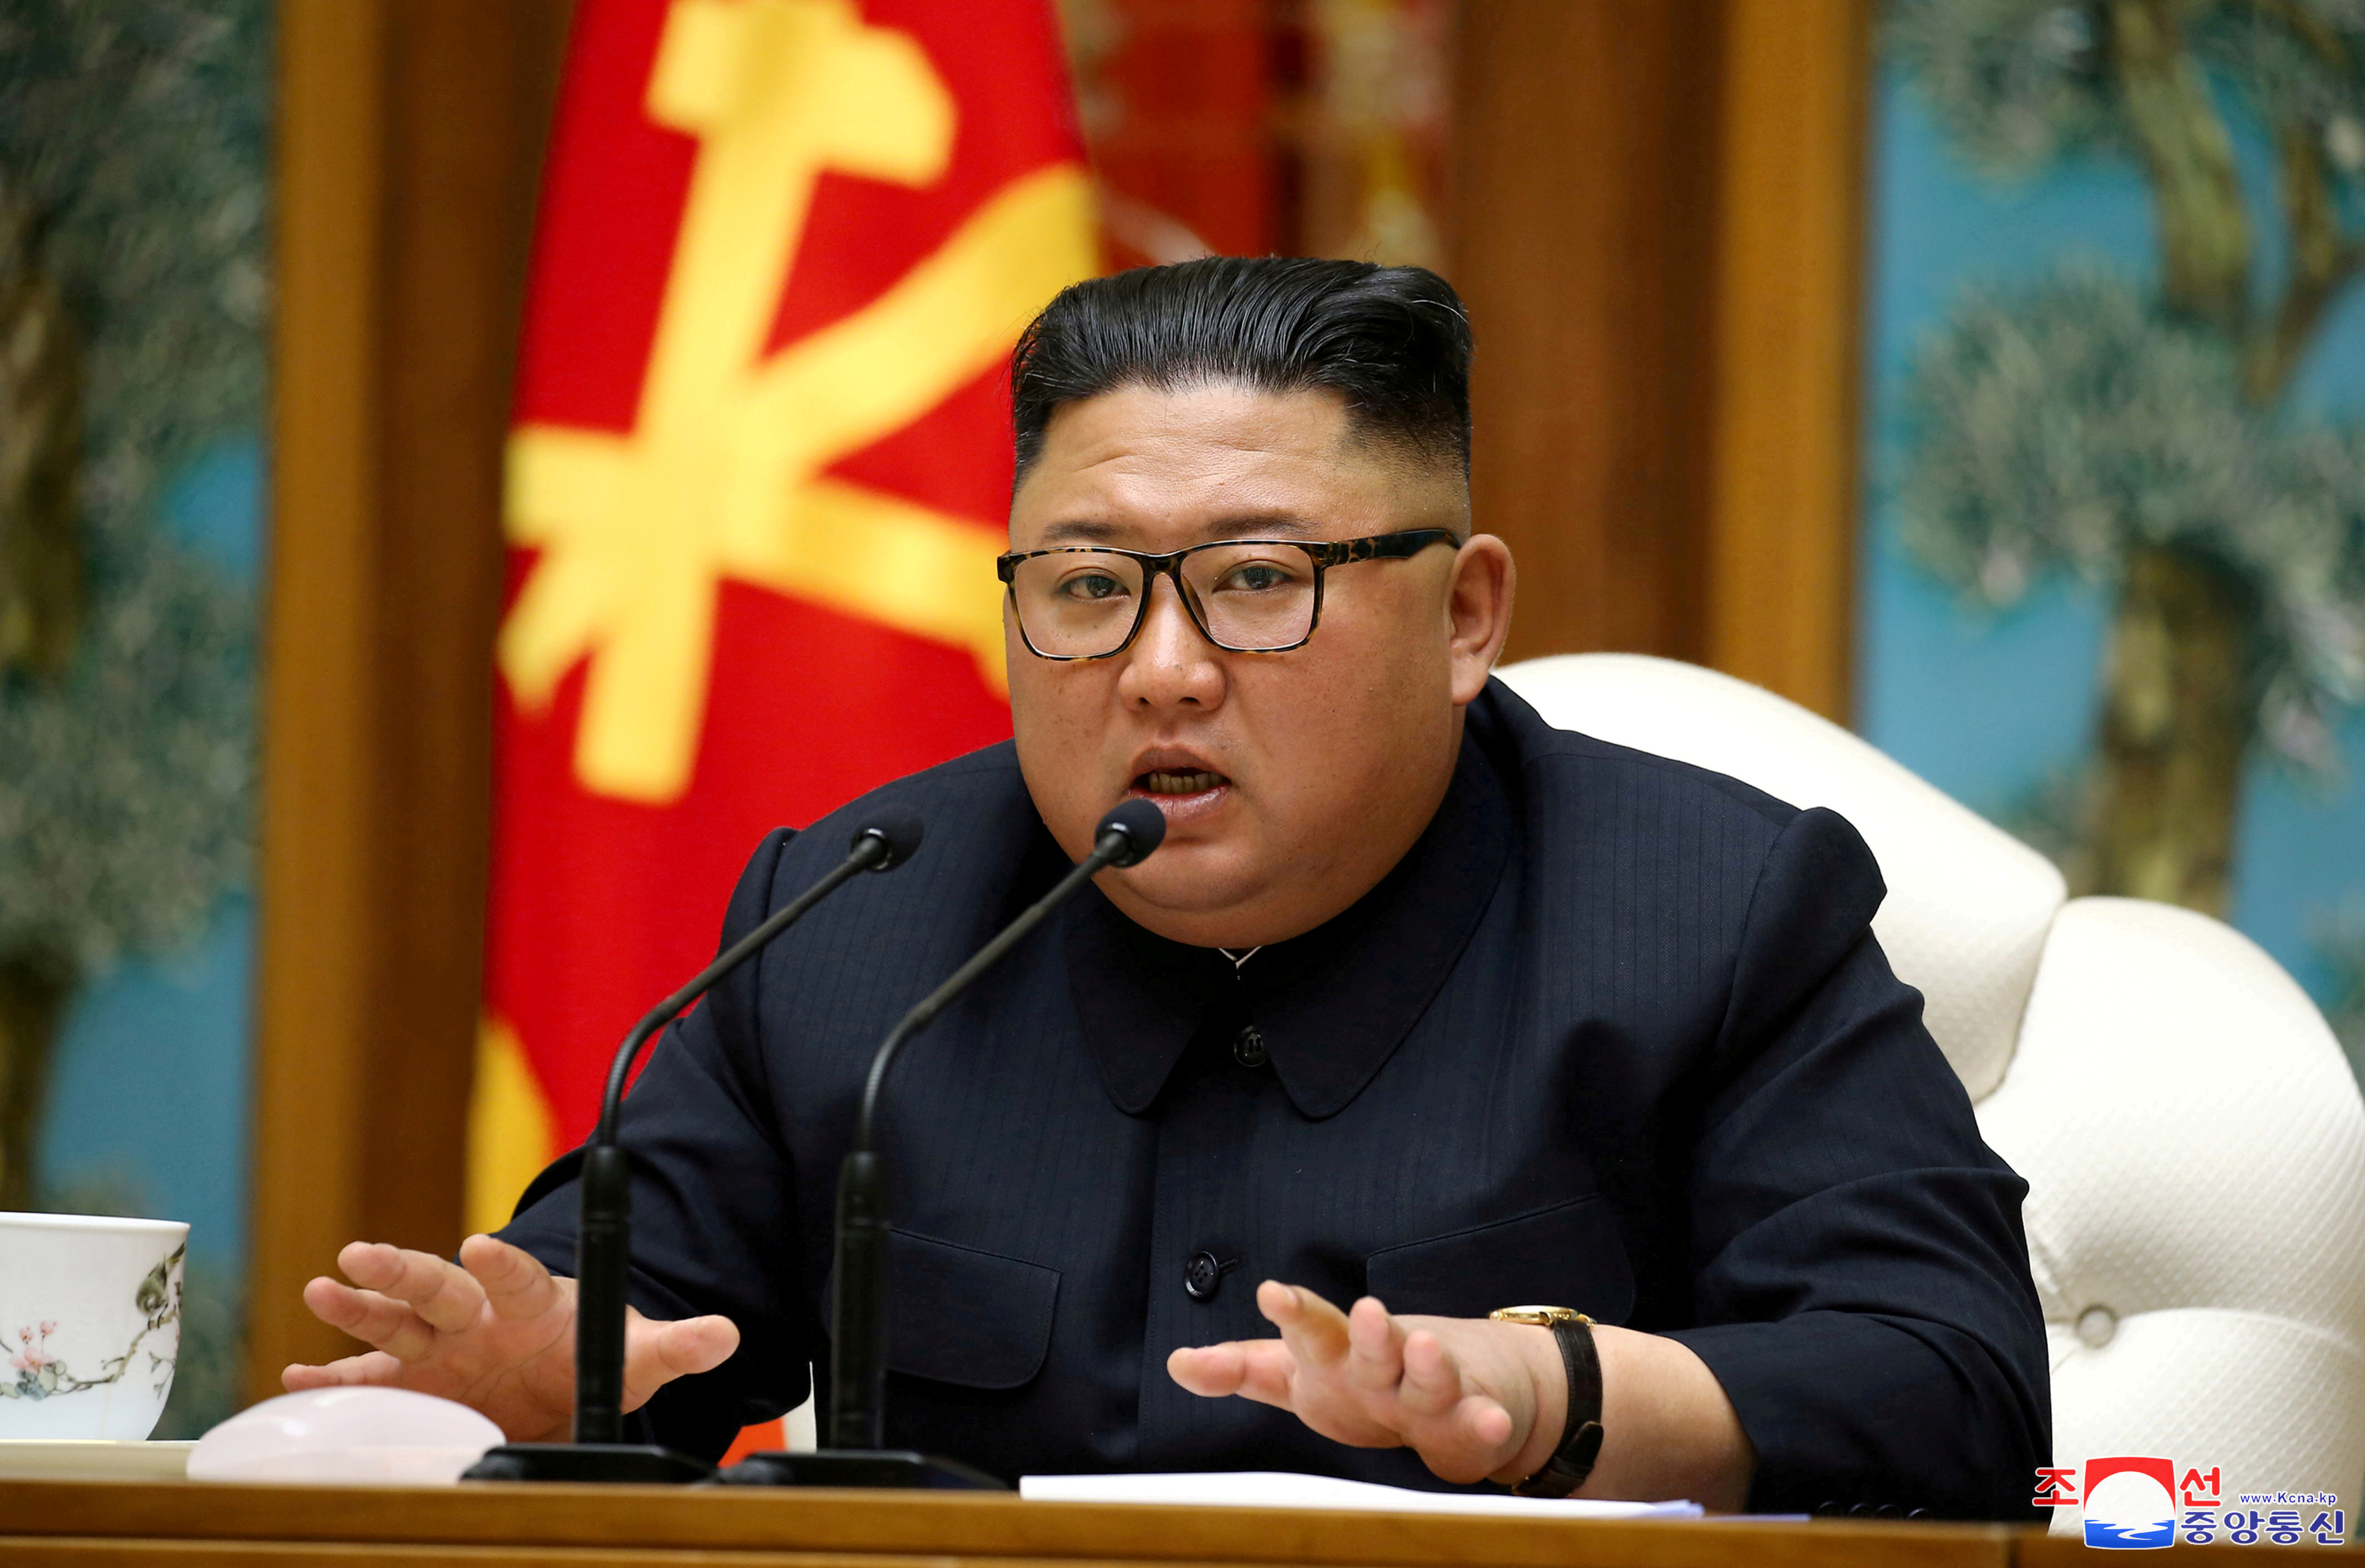 Kim Jong-un mort et remplacé par un sosie ? La folle théorie